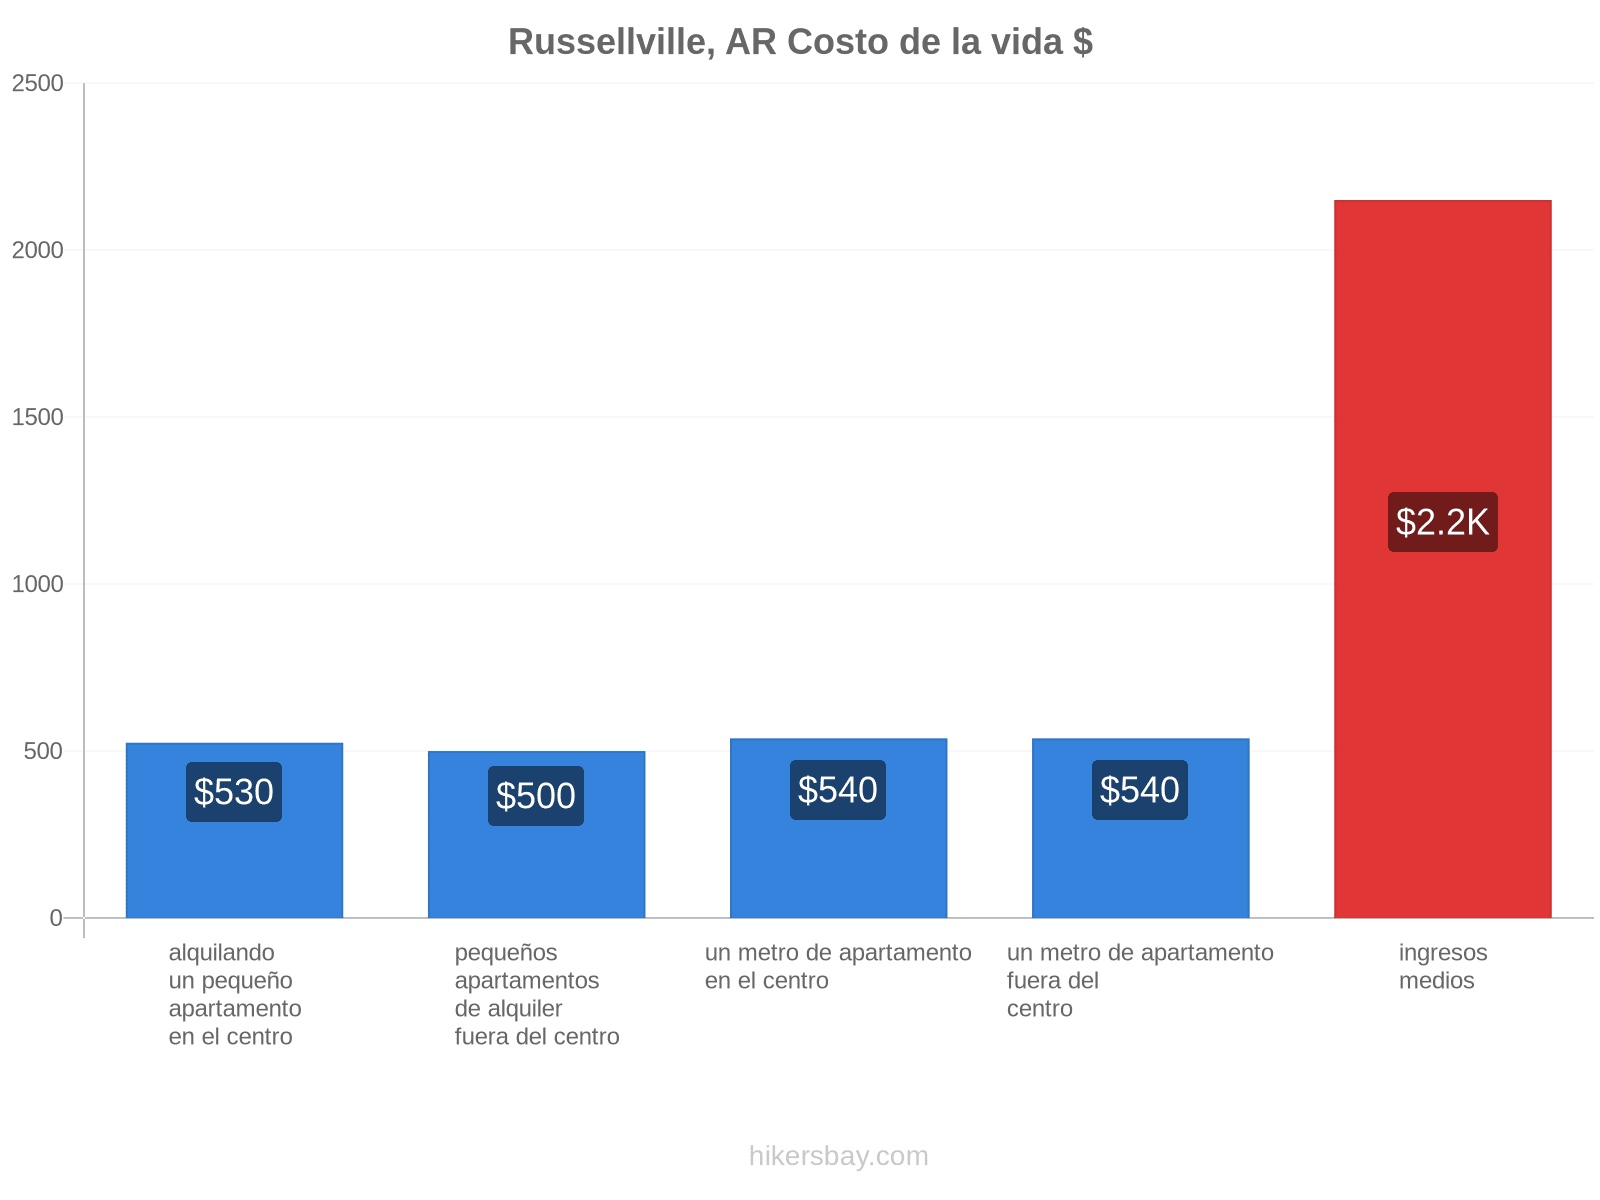 Russellville, AR costo de la vida hikersbay.com